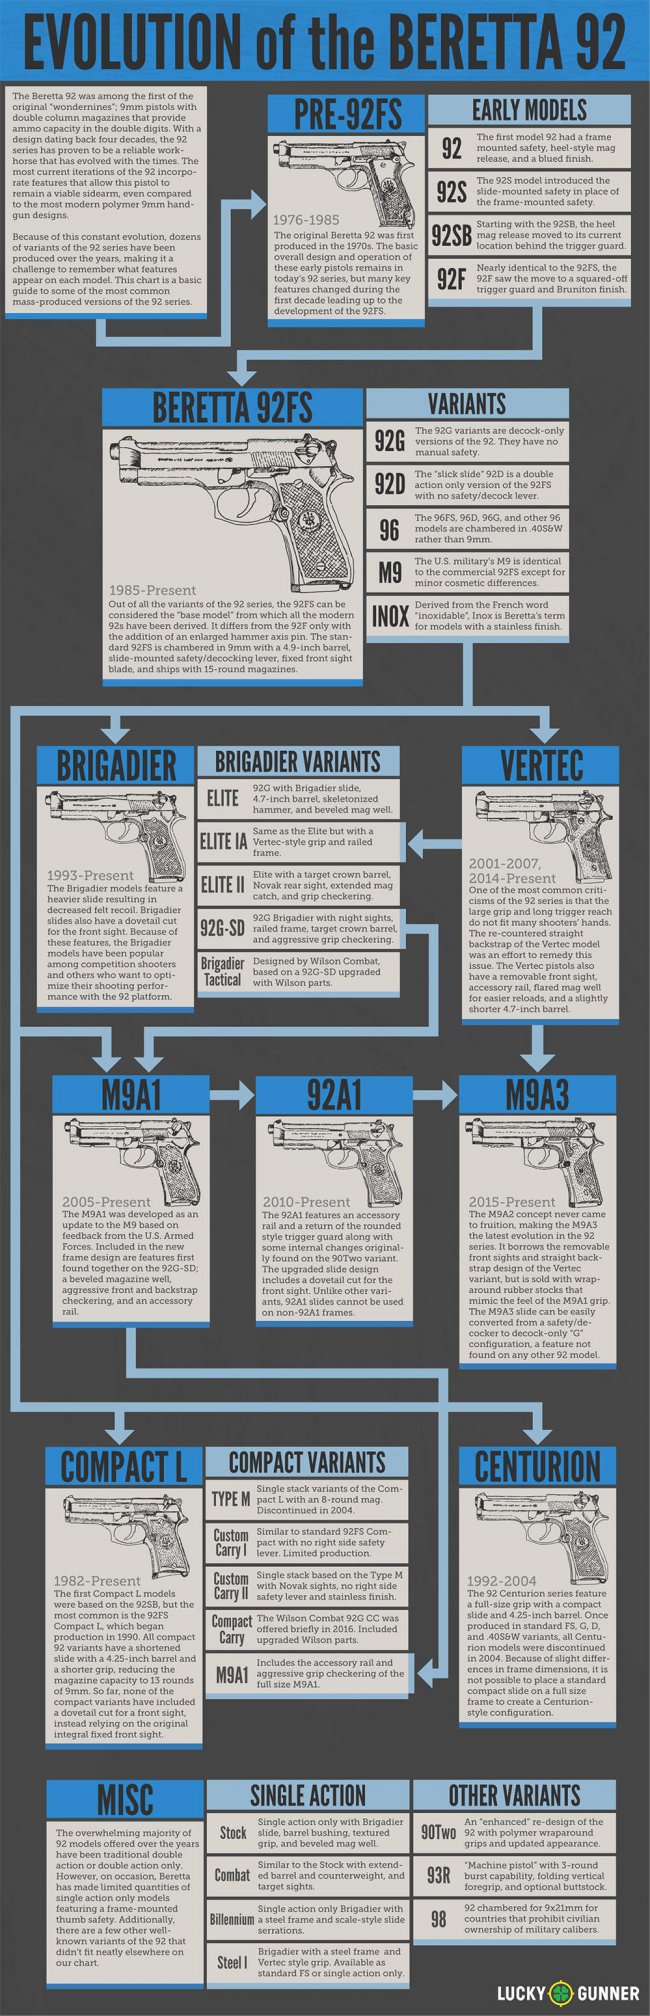 Beretta 92 - Wikipedia